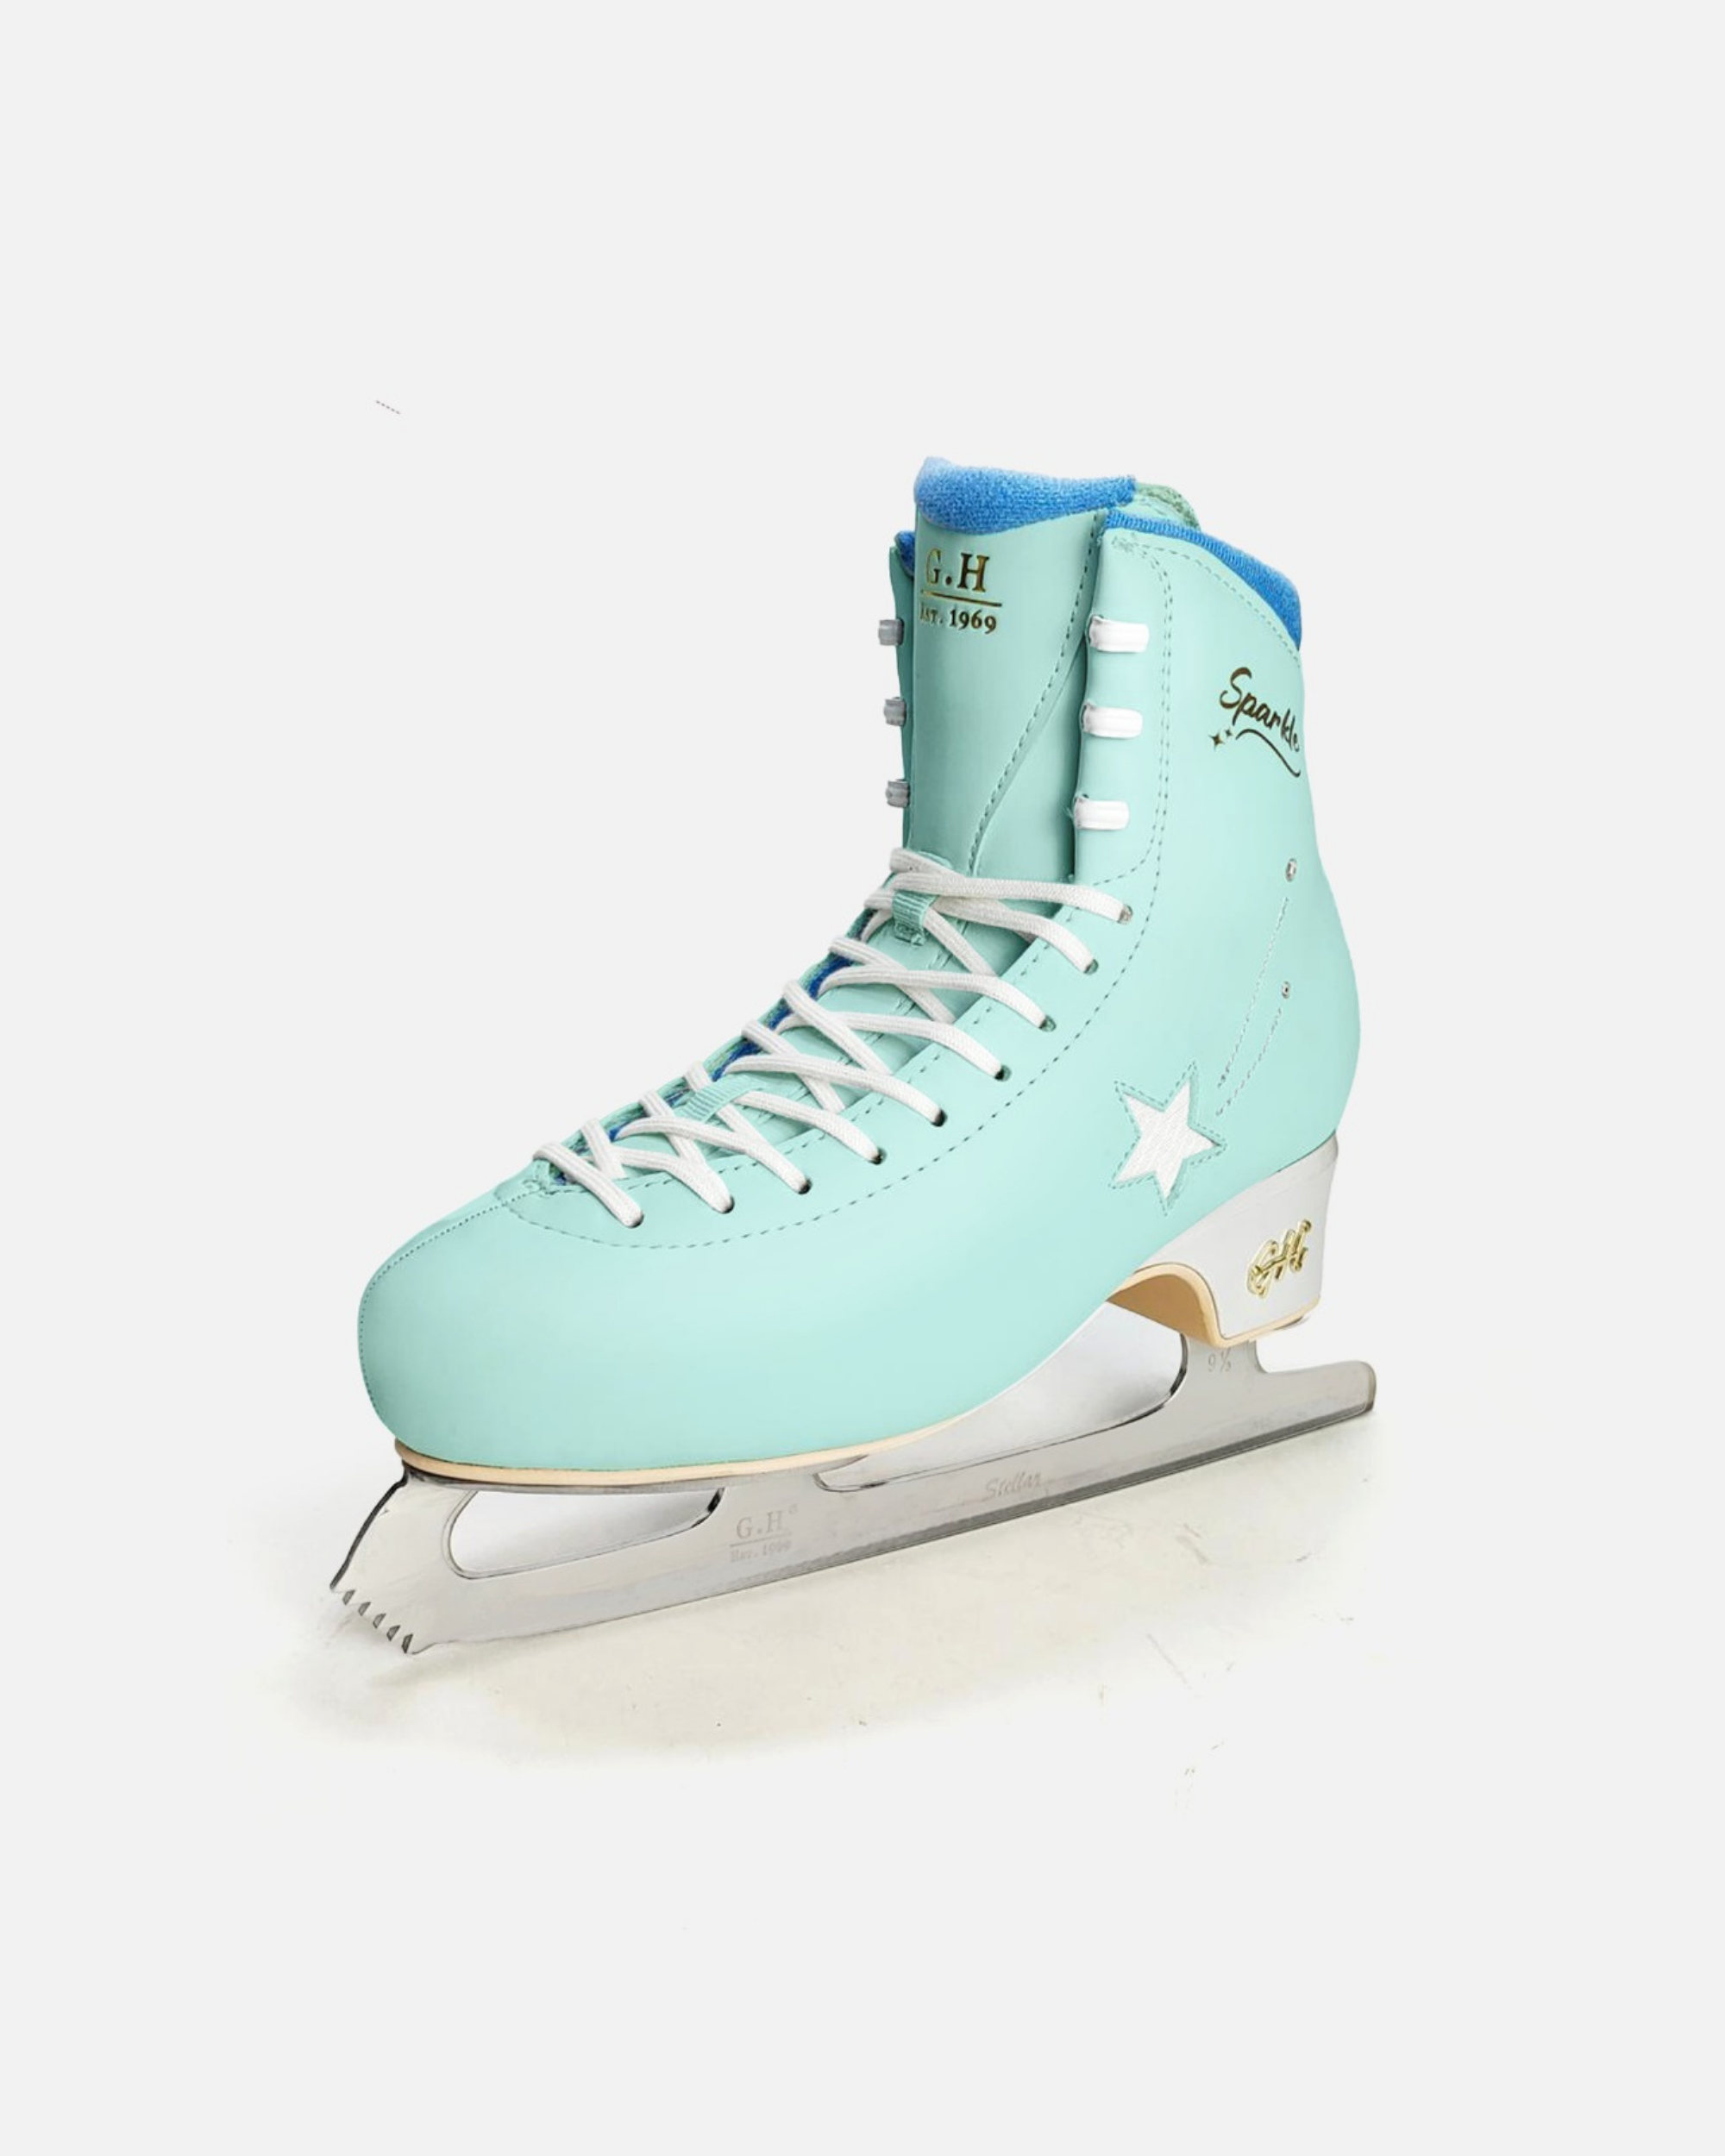 Sparkle Figure Skates (with Stellar Blades)